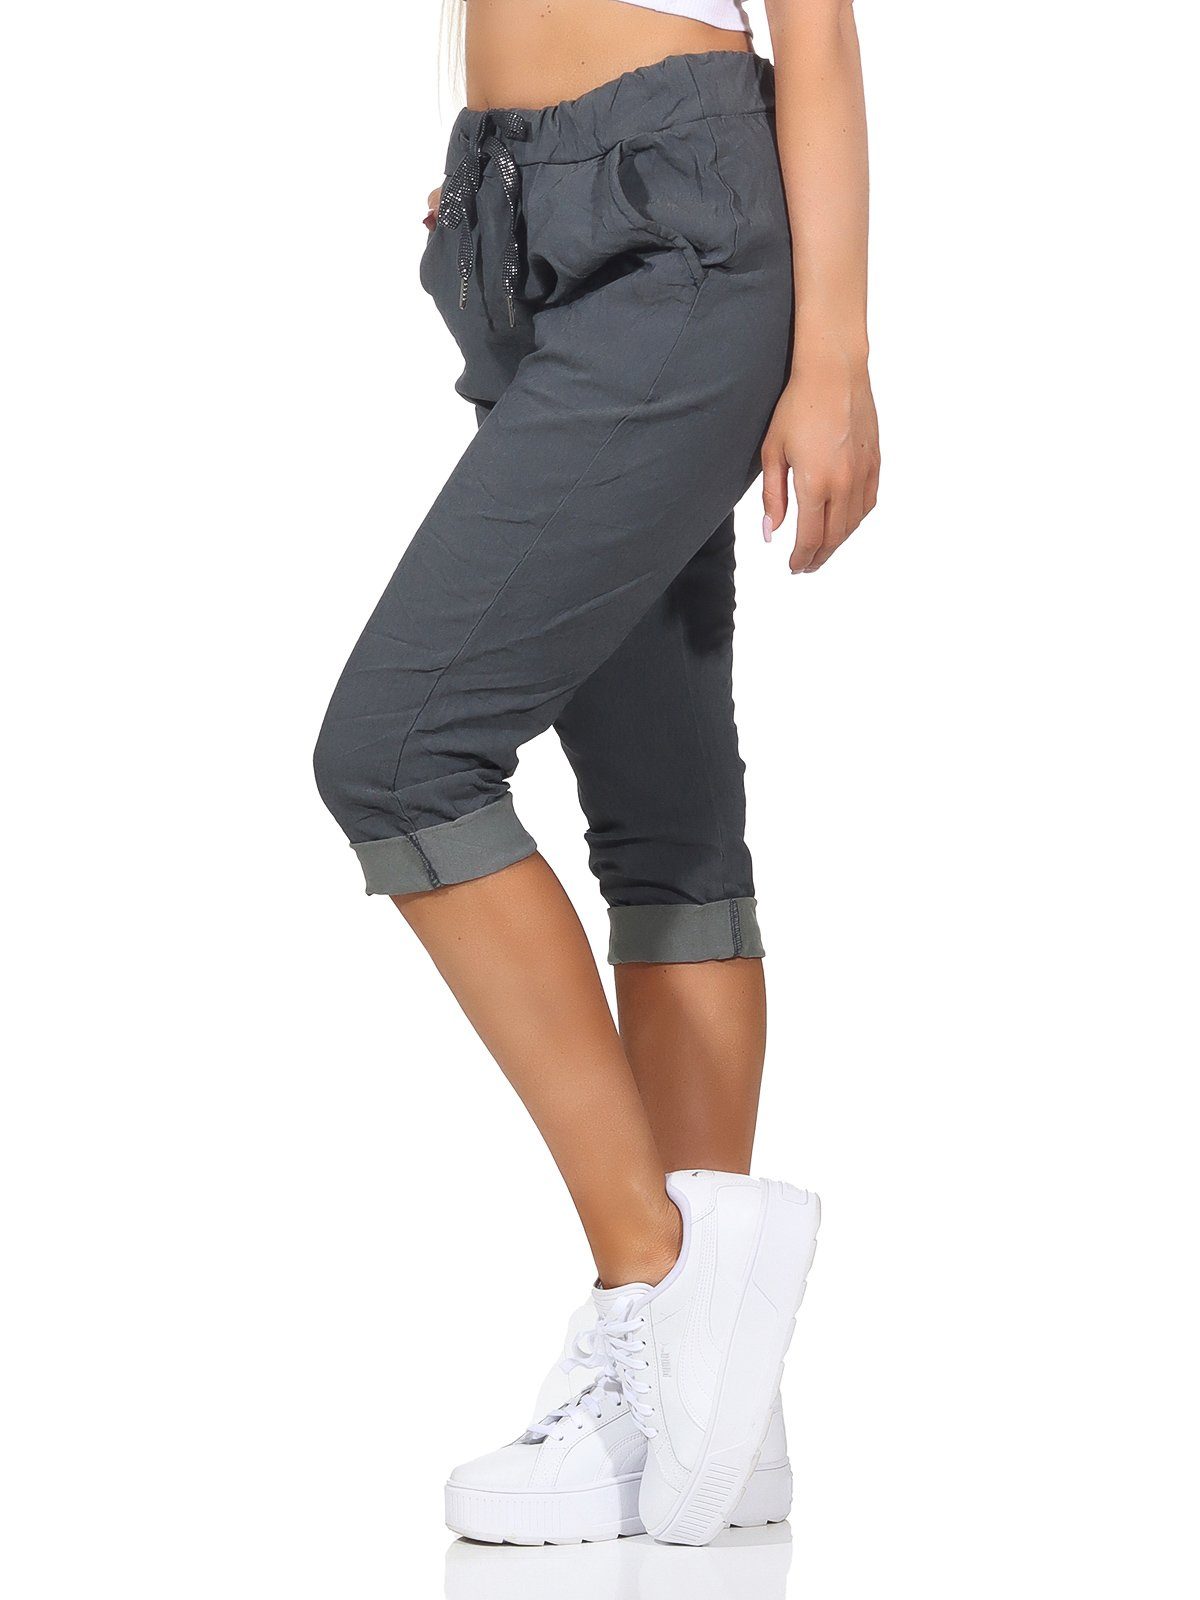 Taschen Aurela Jeans sommerlichen Hose Damen 36-44 Damenmode 7/8-Hose Anthrazit Sommerhose und Bermuda Farben, in Capri Kordelzug, Kurze